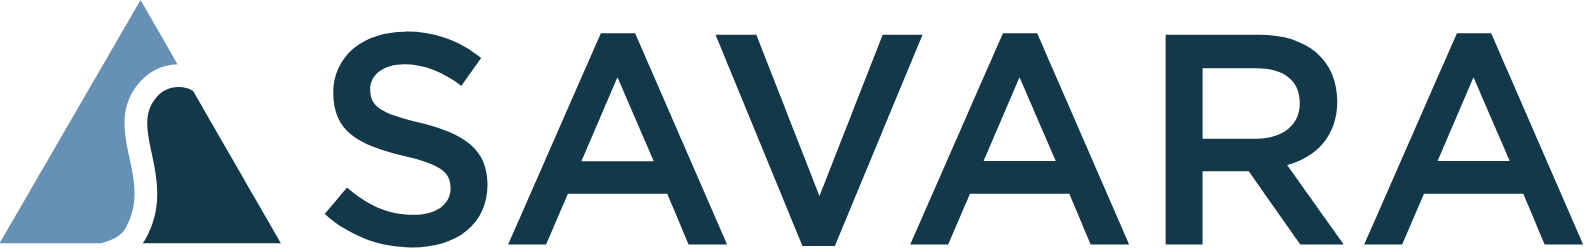 Savara Pharmaceuticals logo large (transparent PNG)